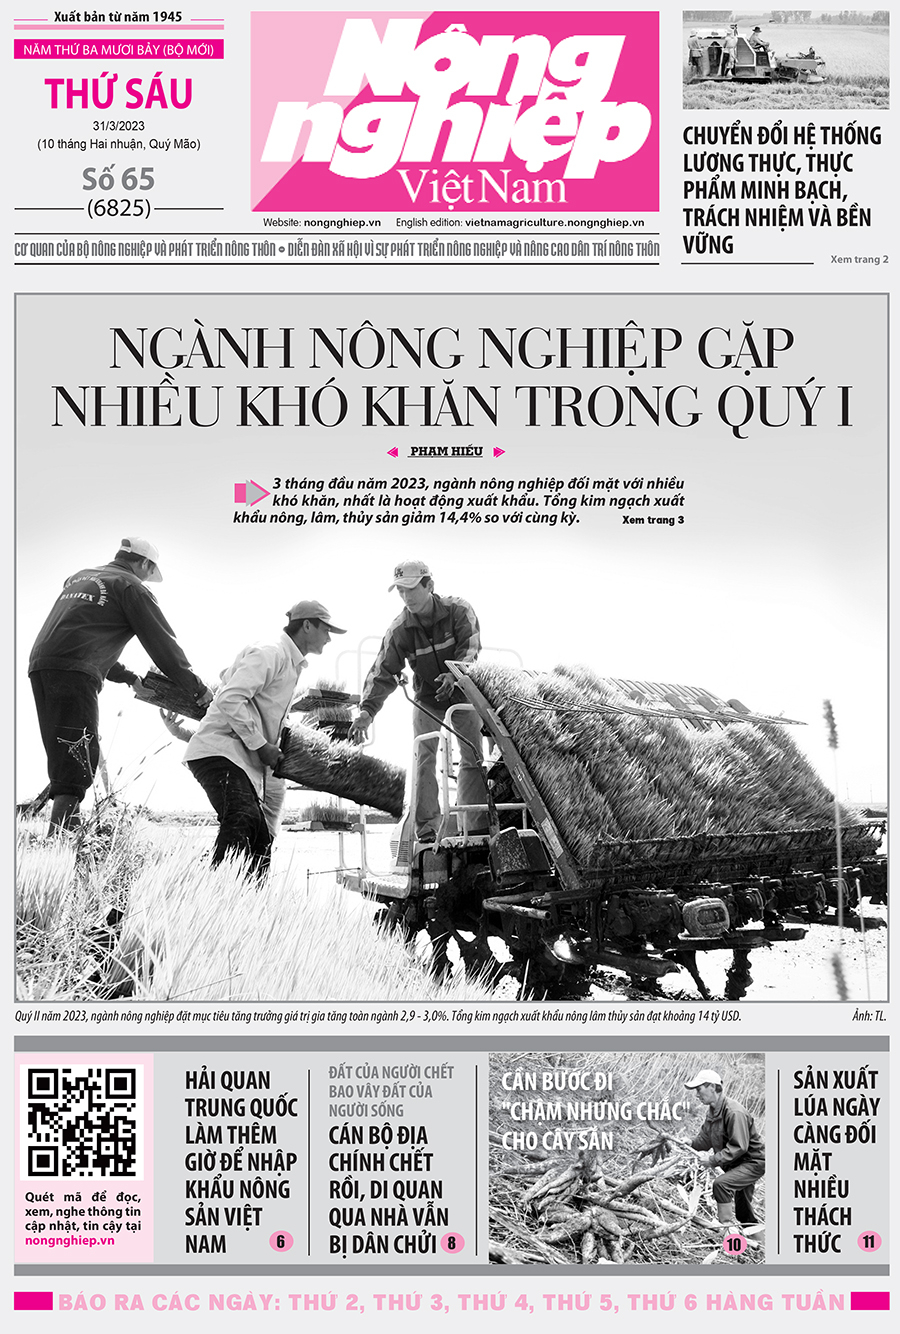 Tin nông nghiệp nổi bật trên số 65, báo Nông nghiệp Việt Nam ngày 31/3/2023